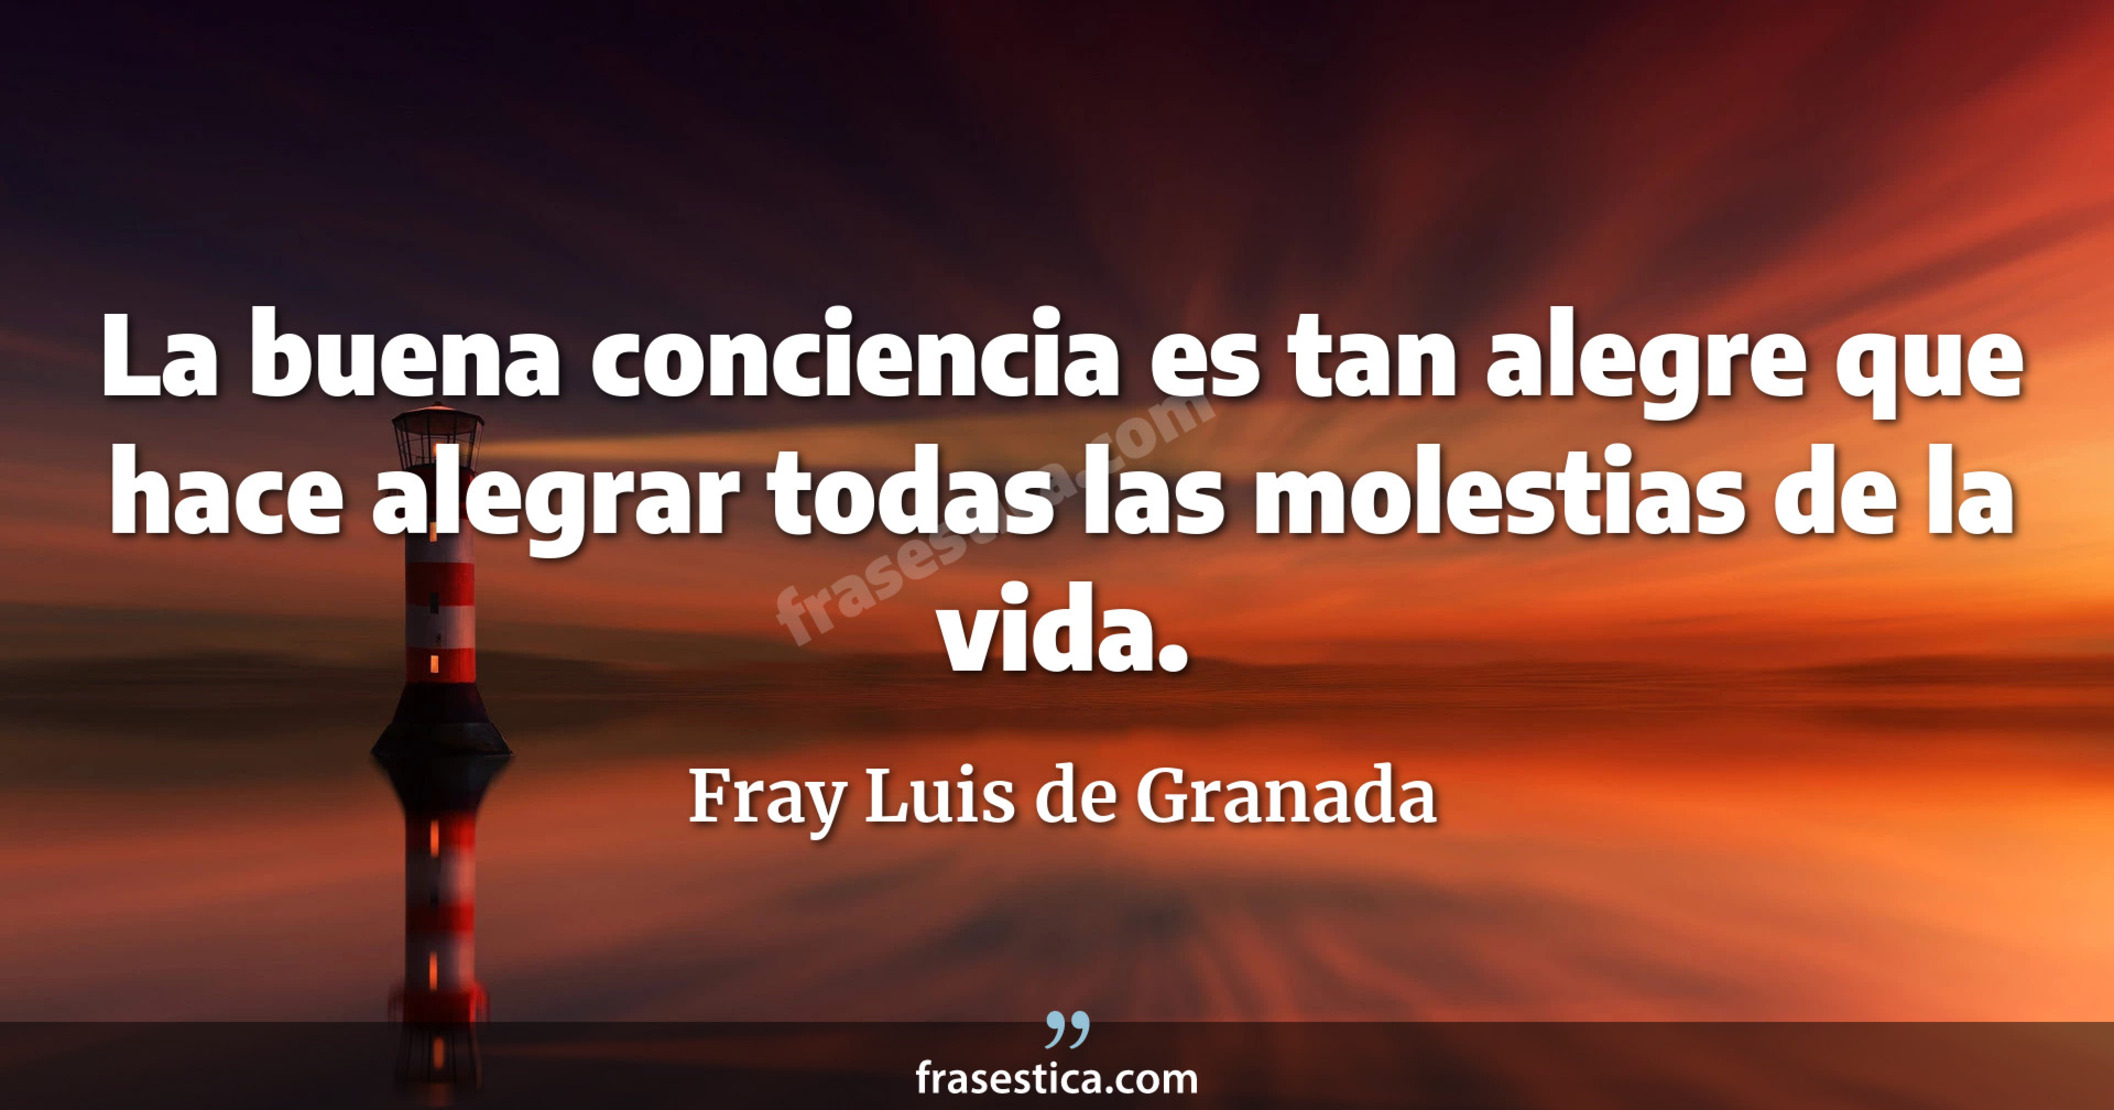 La buena conciencia es tan alegre que hace alegrar todas las molestias de la vida. - Fray Luis de Granada